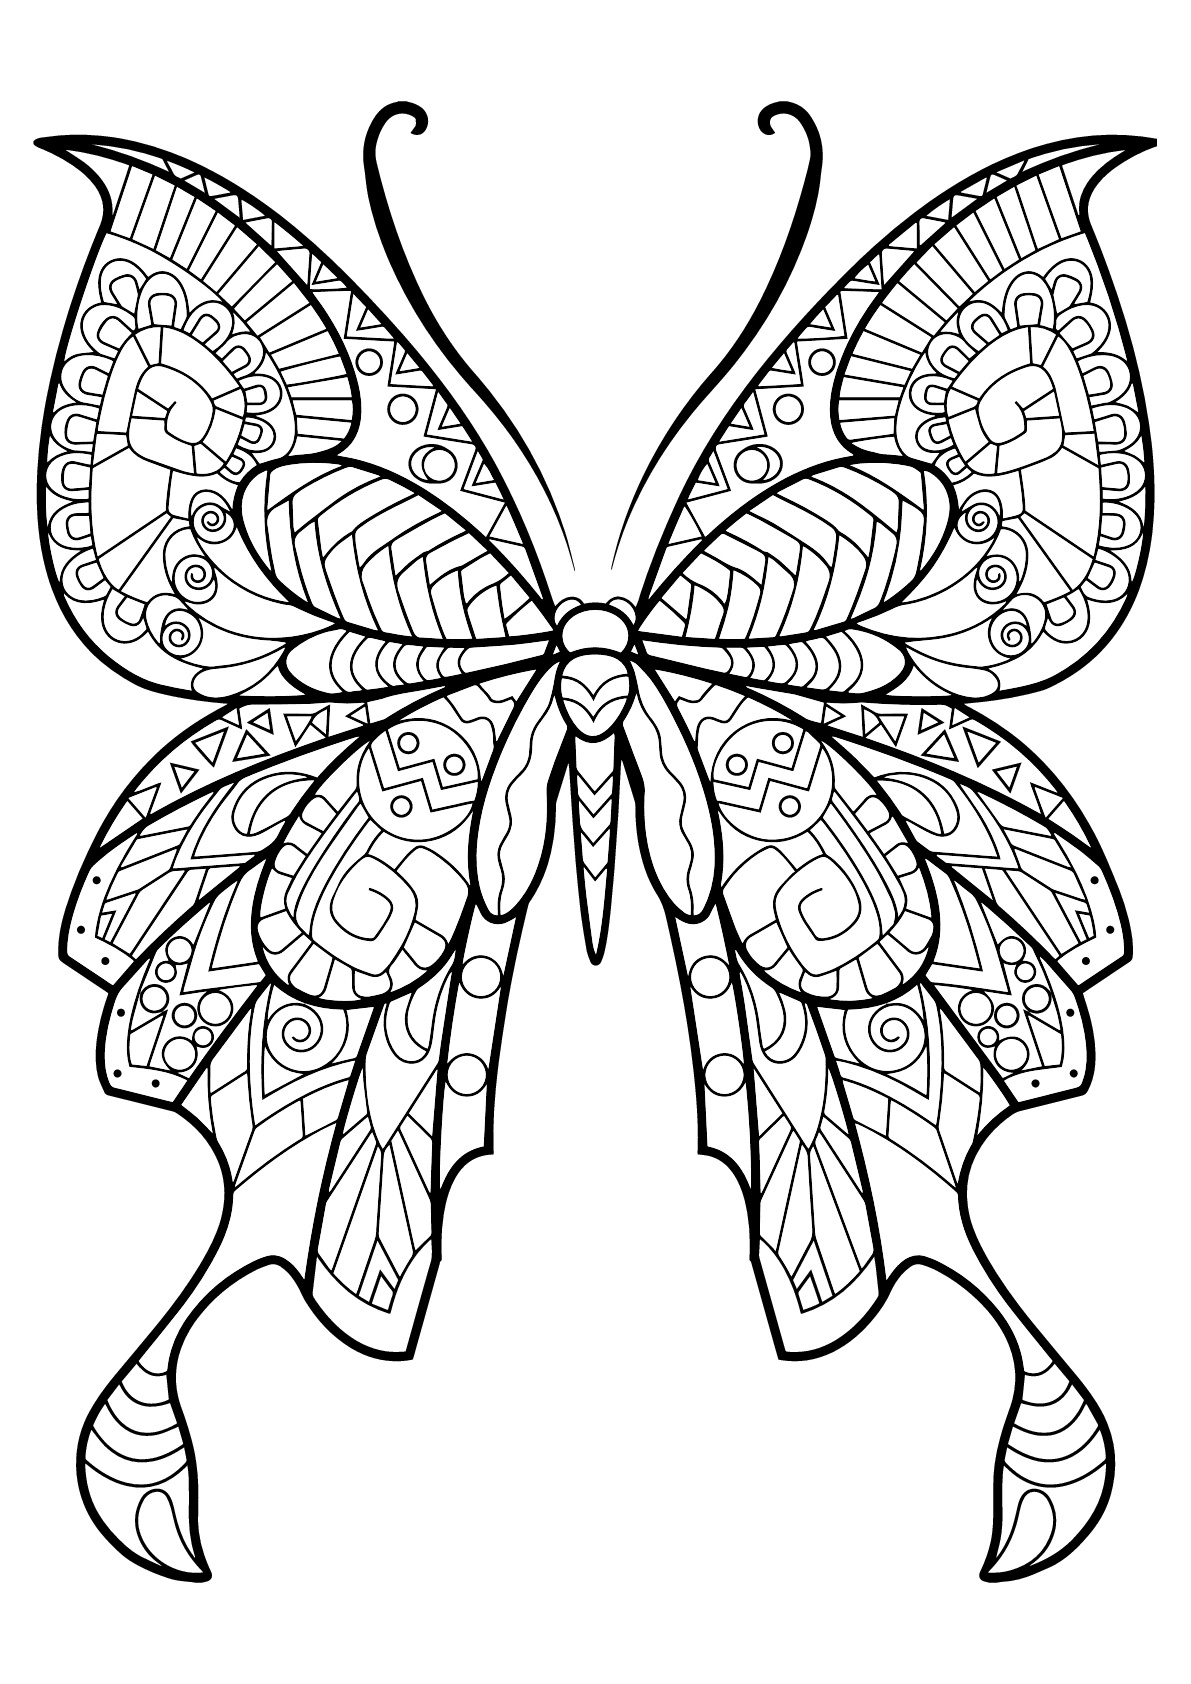 Coloriage De Papillons Pour Enfants - Coloriage De pour Papillon Coloriage